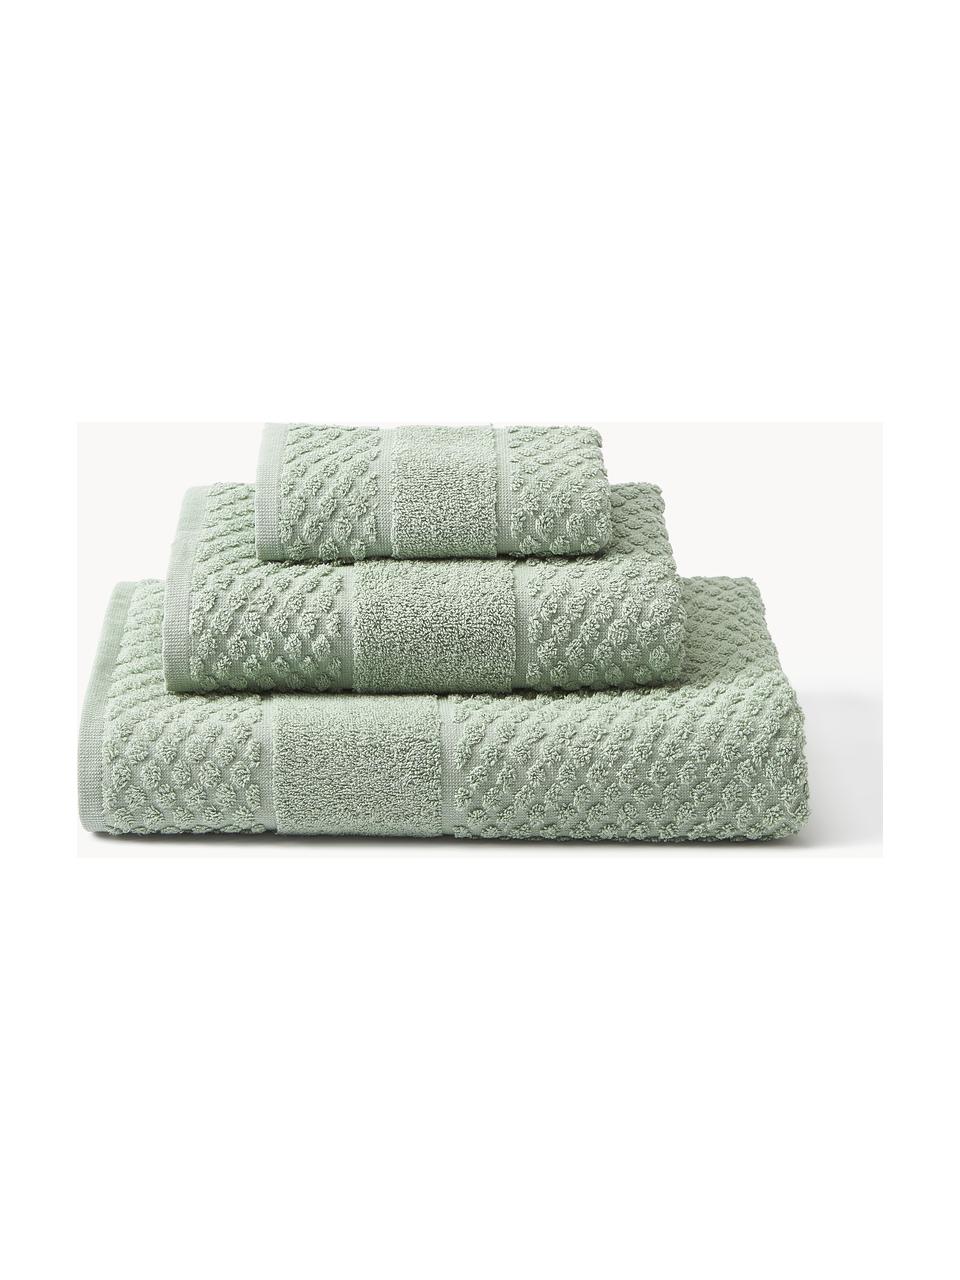 Komplet ręczników Katharina, różne rozmiary, Szałwiowy zielony, Komplet z różnymi rozmiarami